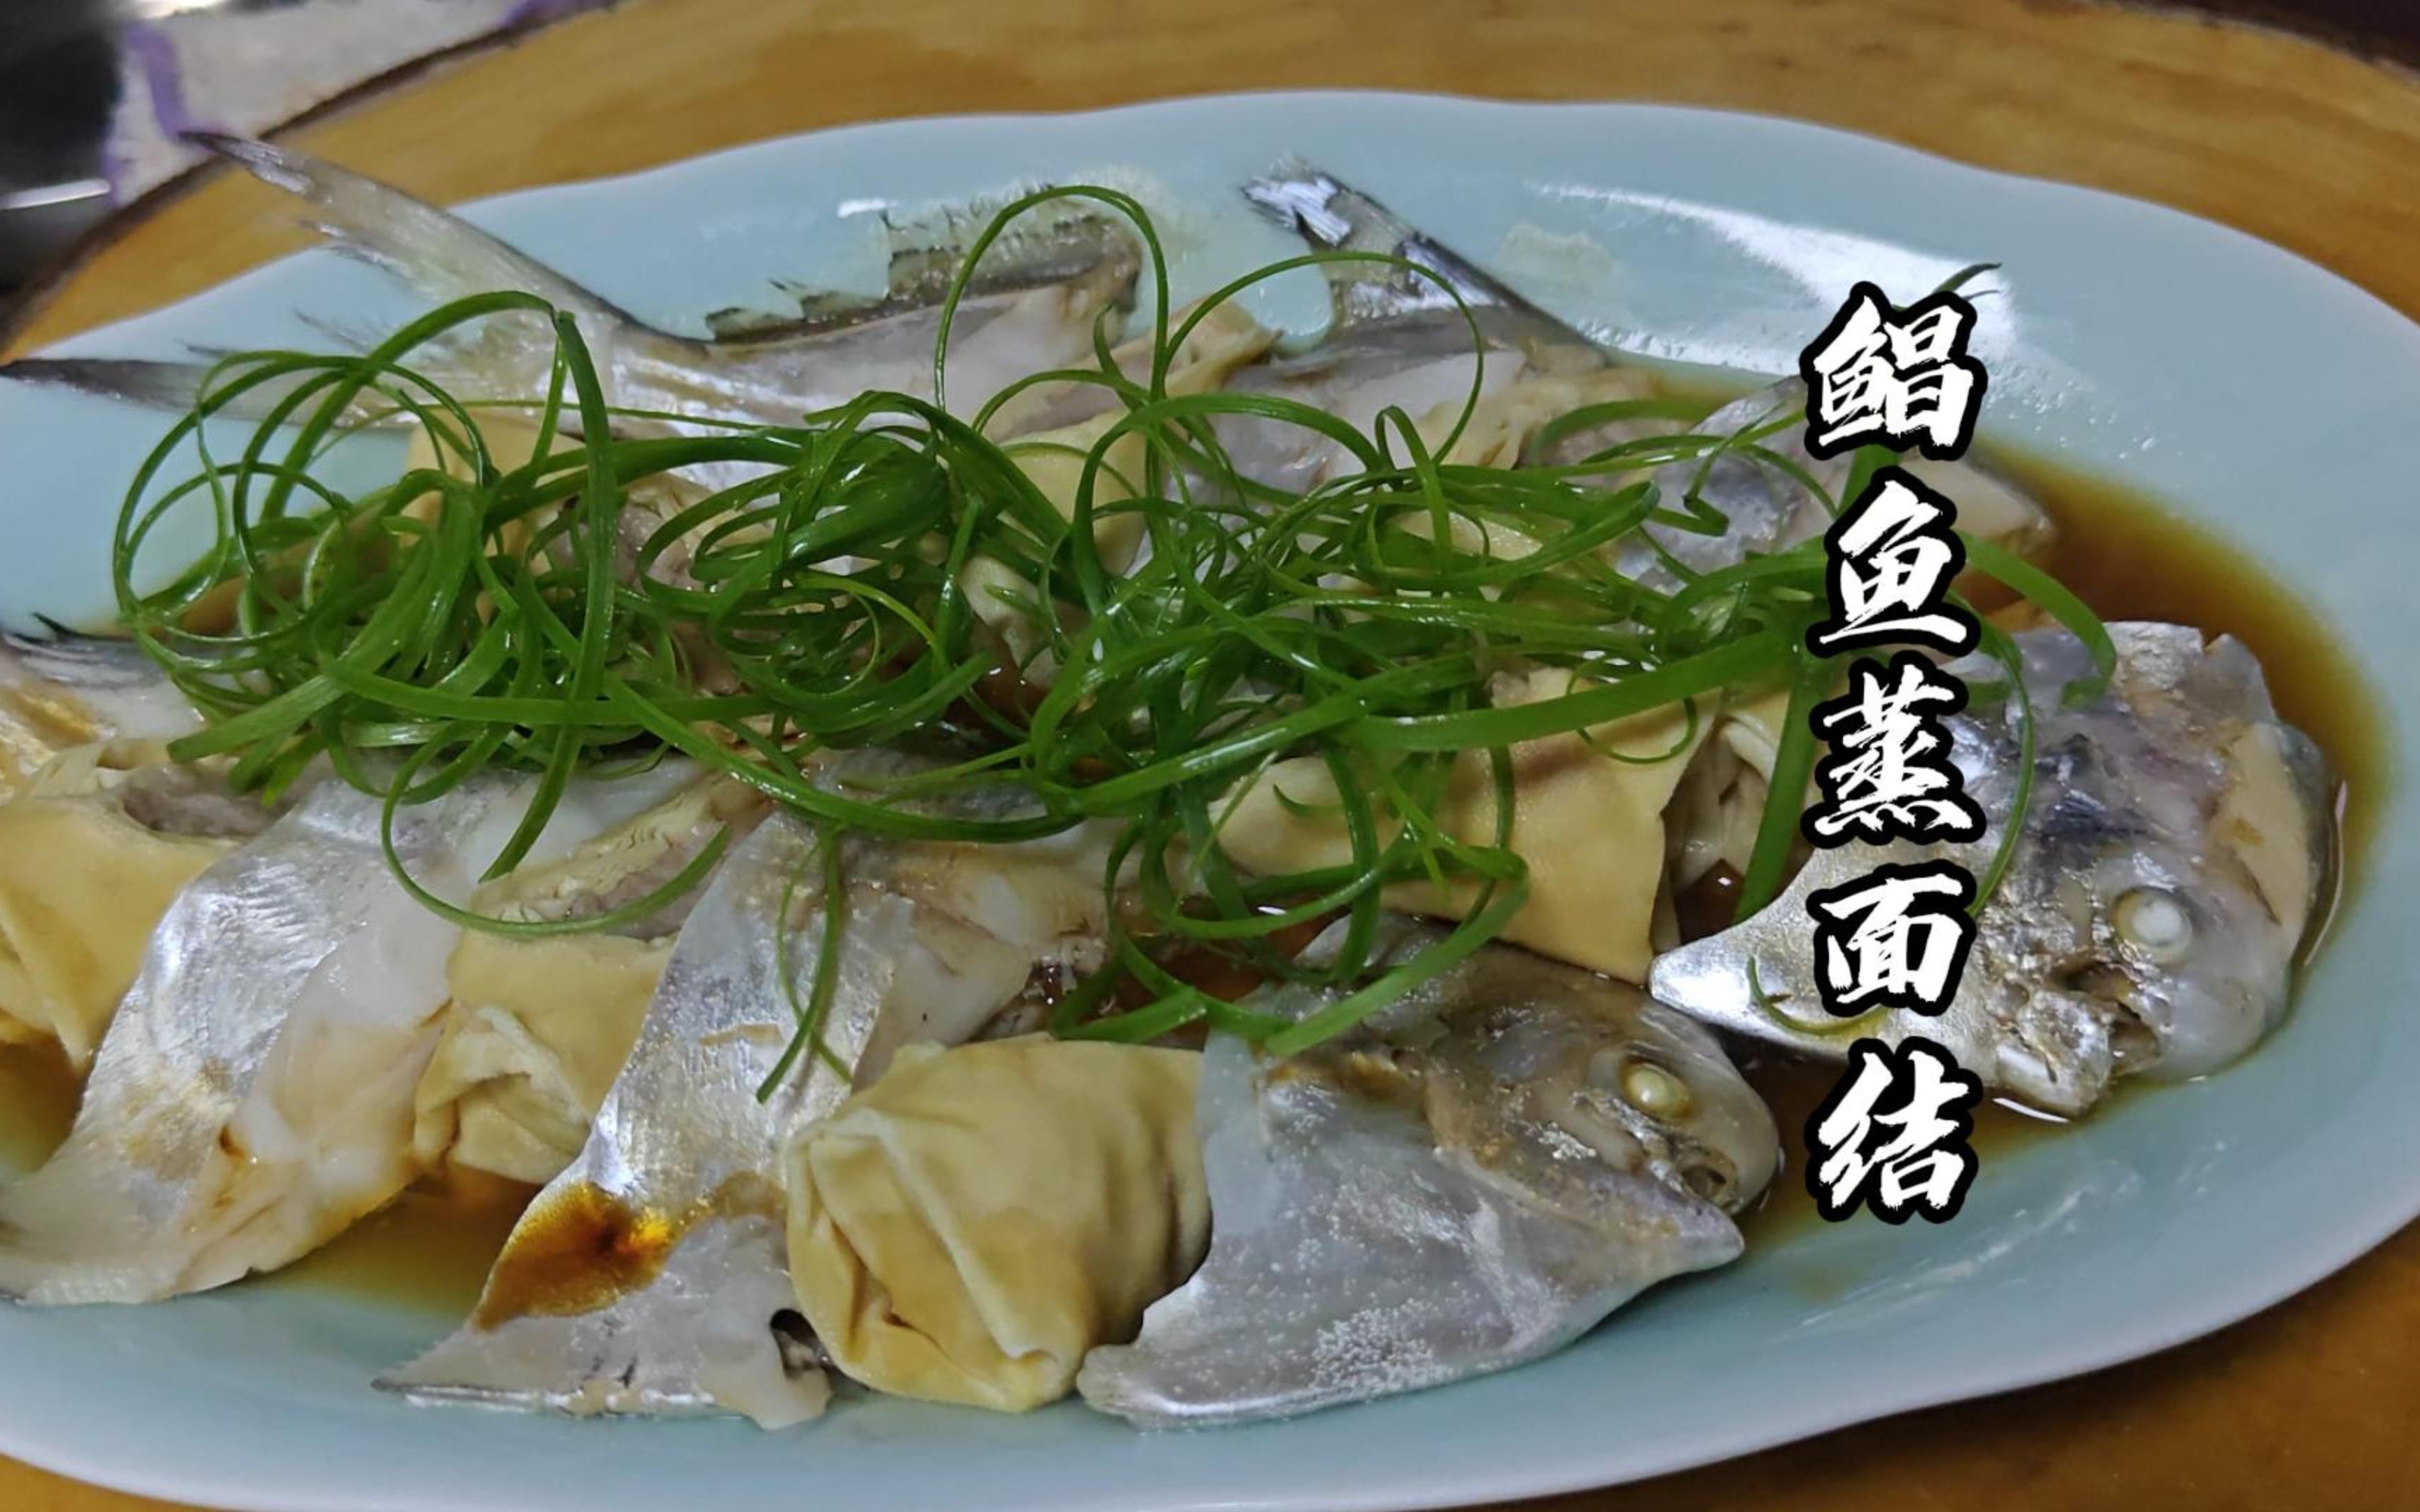 鲳鱼蒸面结也是我们宁波菜的一个特点,有与有肉这样营养和口味都更